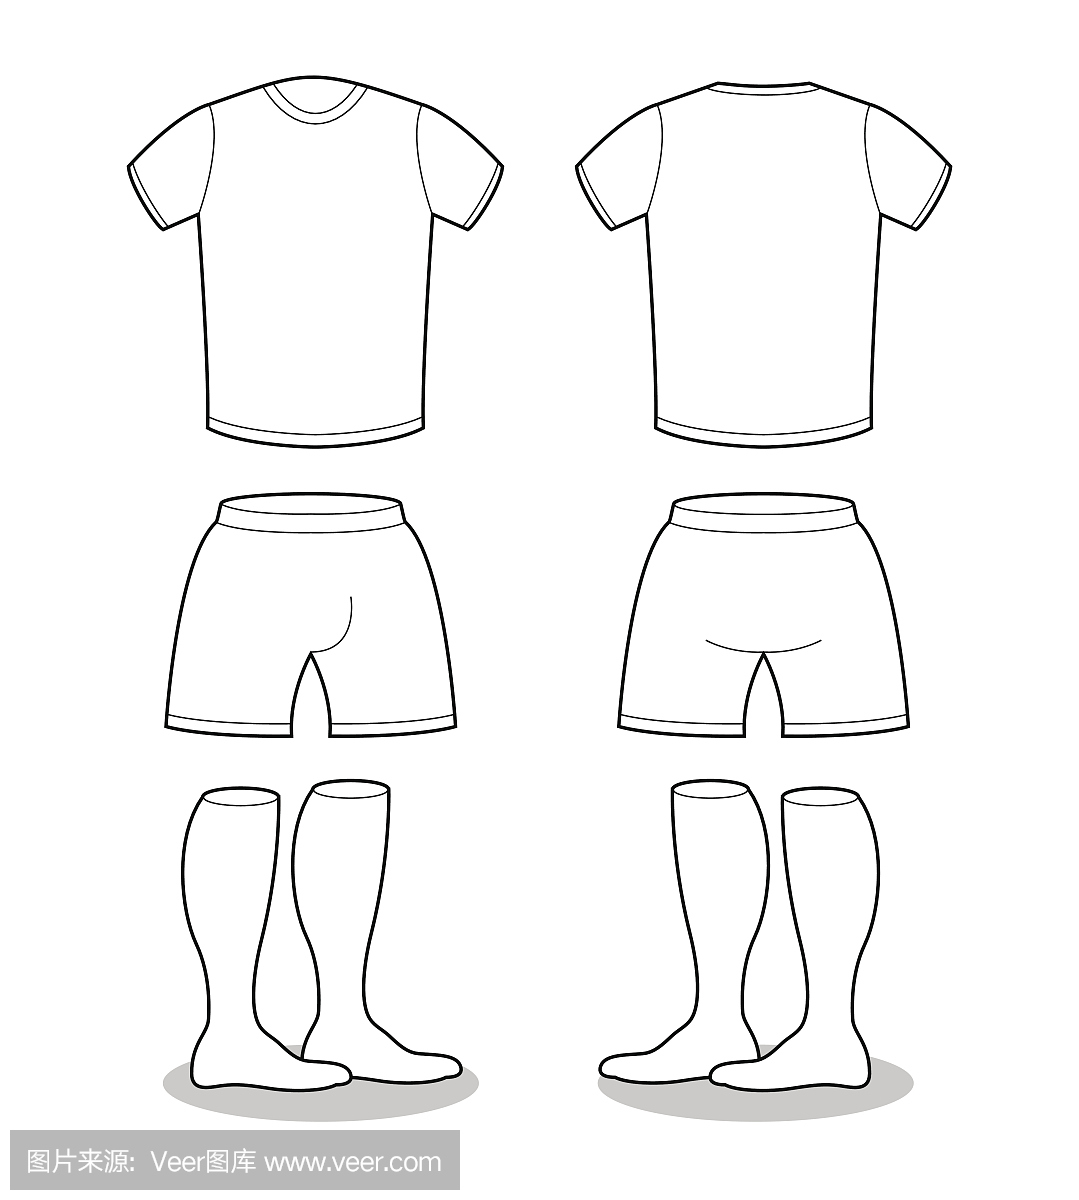 运动服足球的样品。 T恤,短裤和袜子